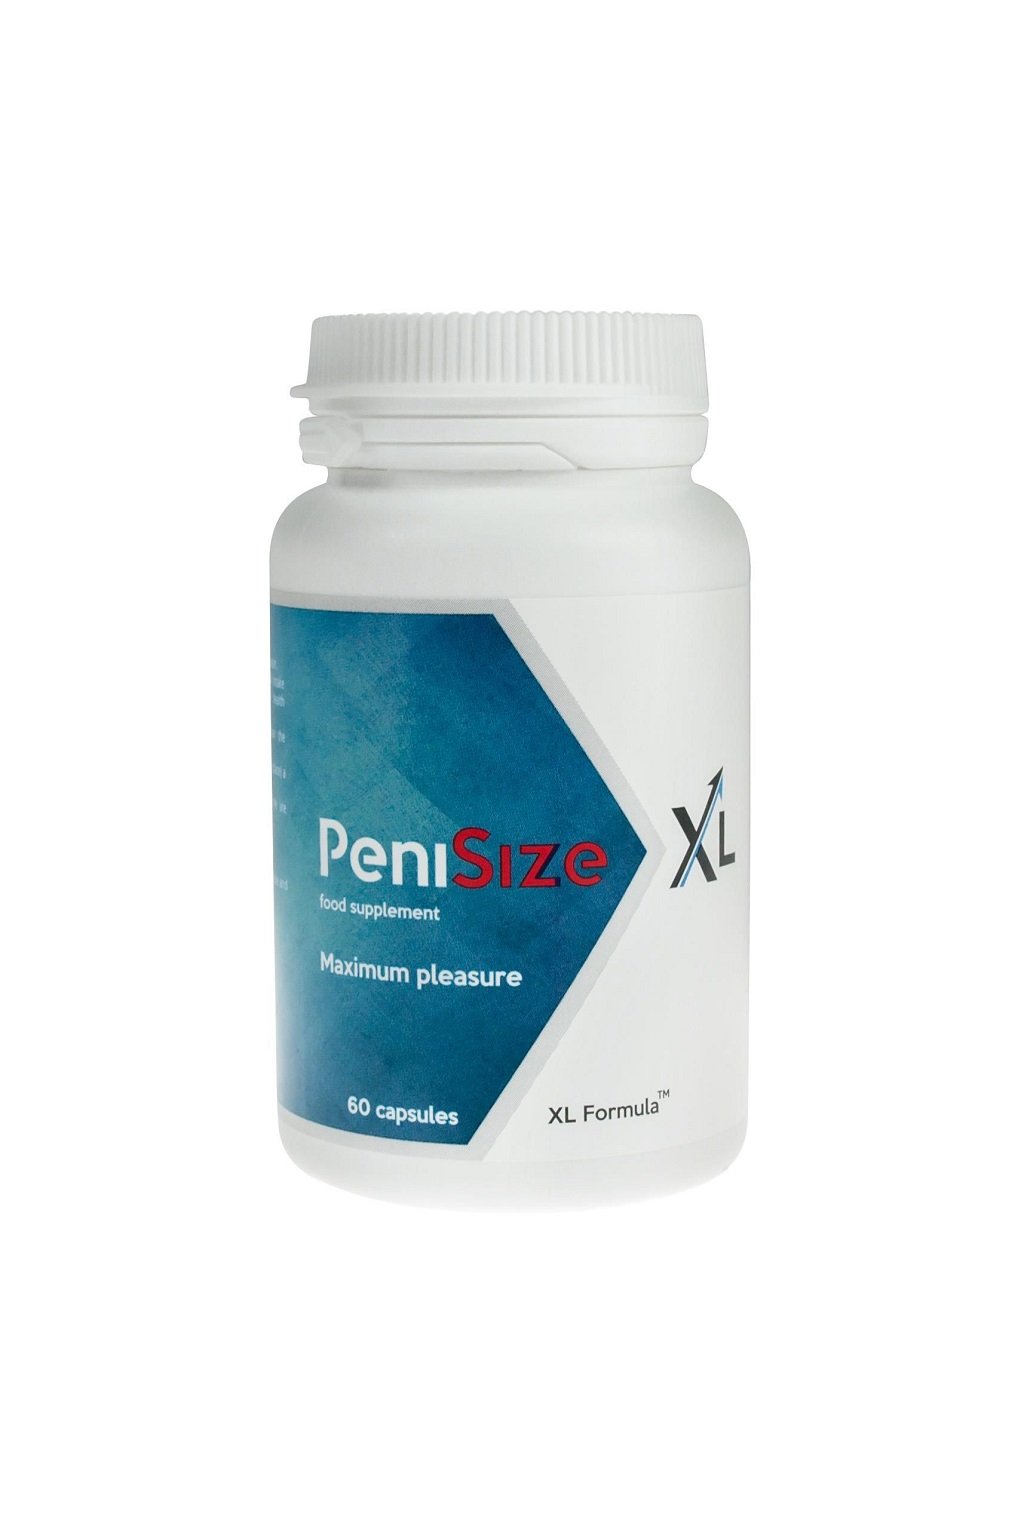 penisizexl 60 kapsli doplnek stravy ovlivnujici velikost penisu a celkovou kvalitu sexuálni aktivity